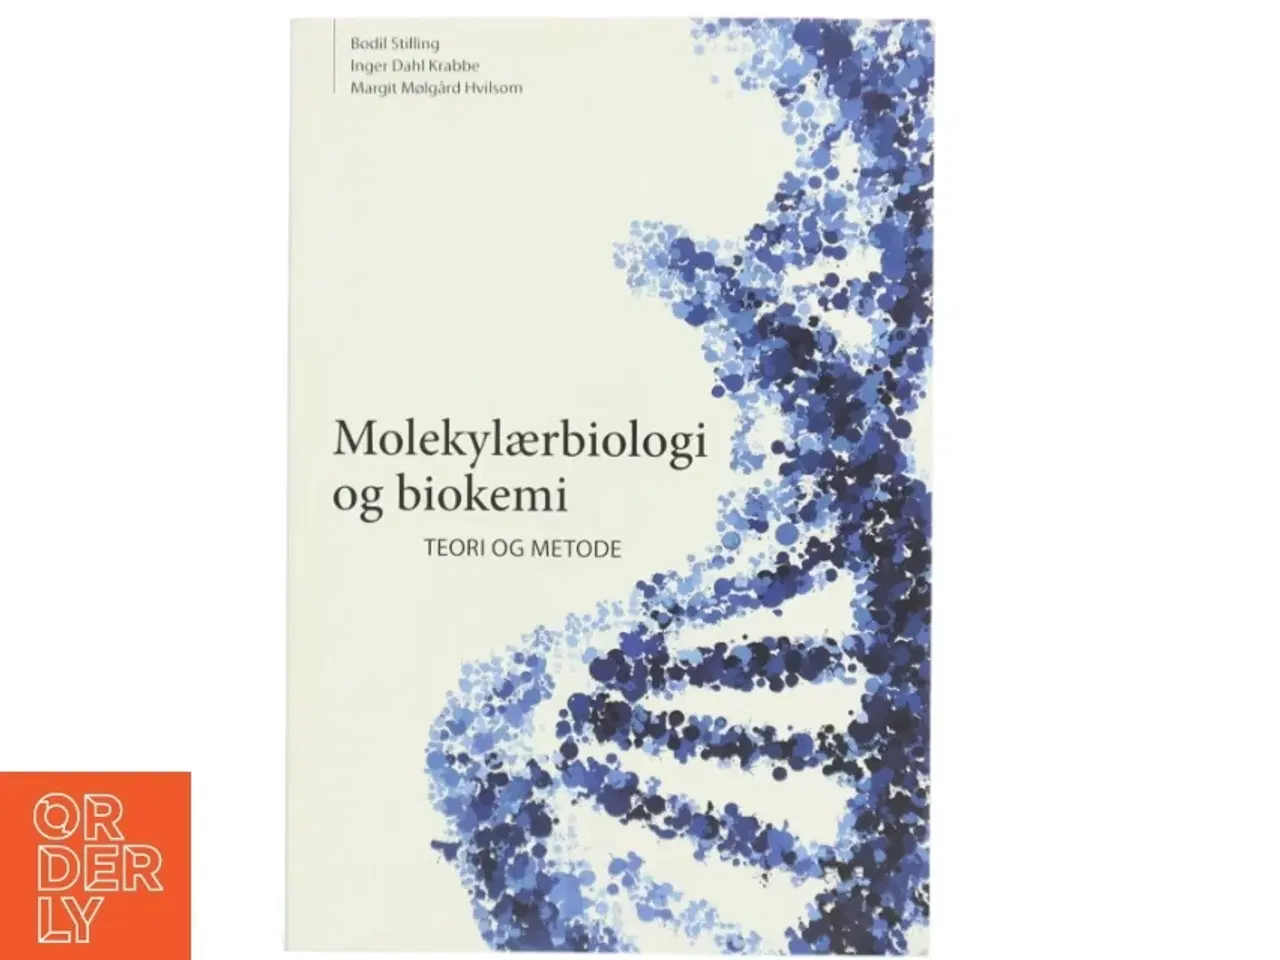 Billede 1 - Molekylærbiologi og biokemi - Teori og metode fra Nyt Teknisk Forlag